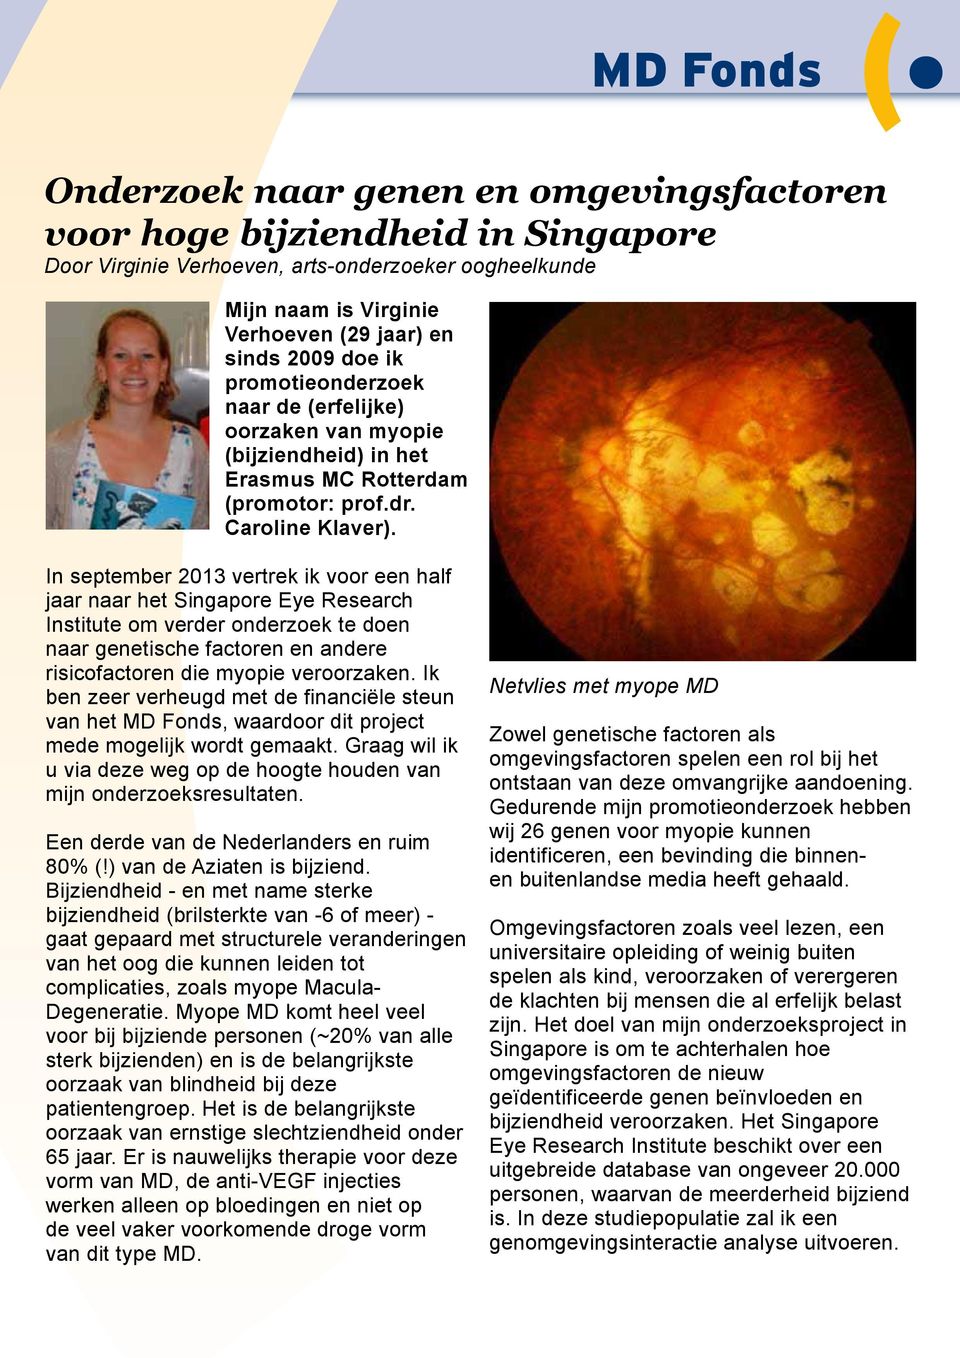 In september 2013 vertrek ik voor een half jaar naar het Singapore Eye Research Institute om verder onderzoek te doen naar genetische factoren en andere risicofactoren die myopie veroorzaken.